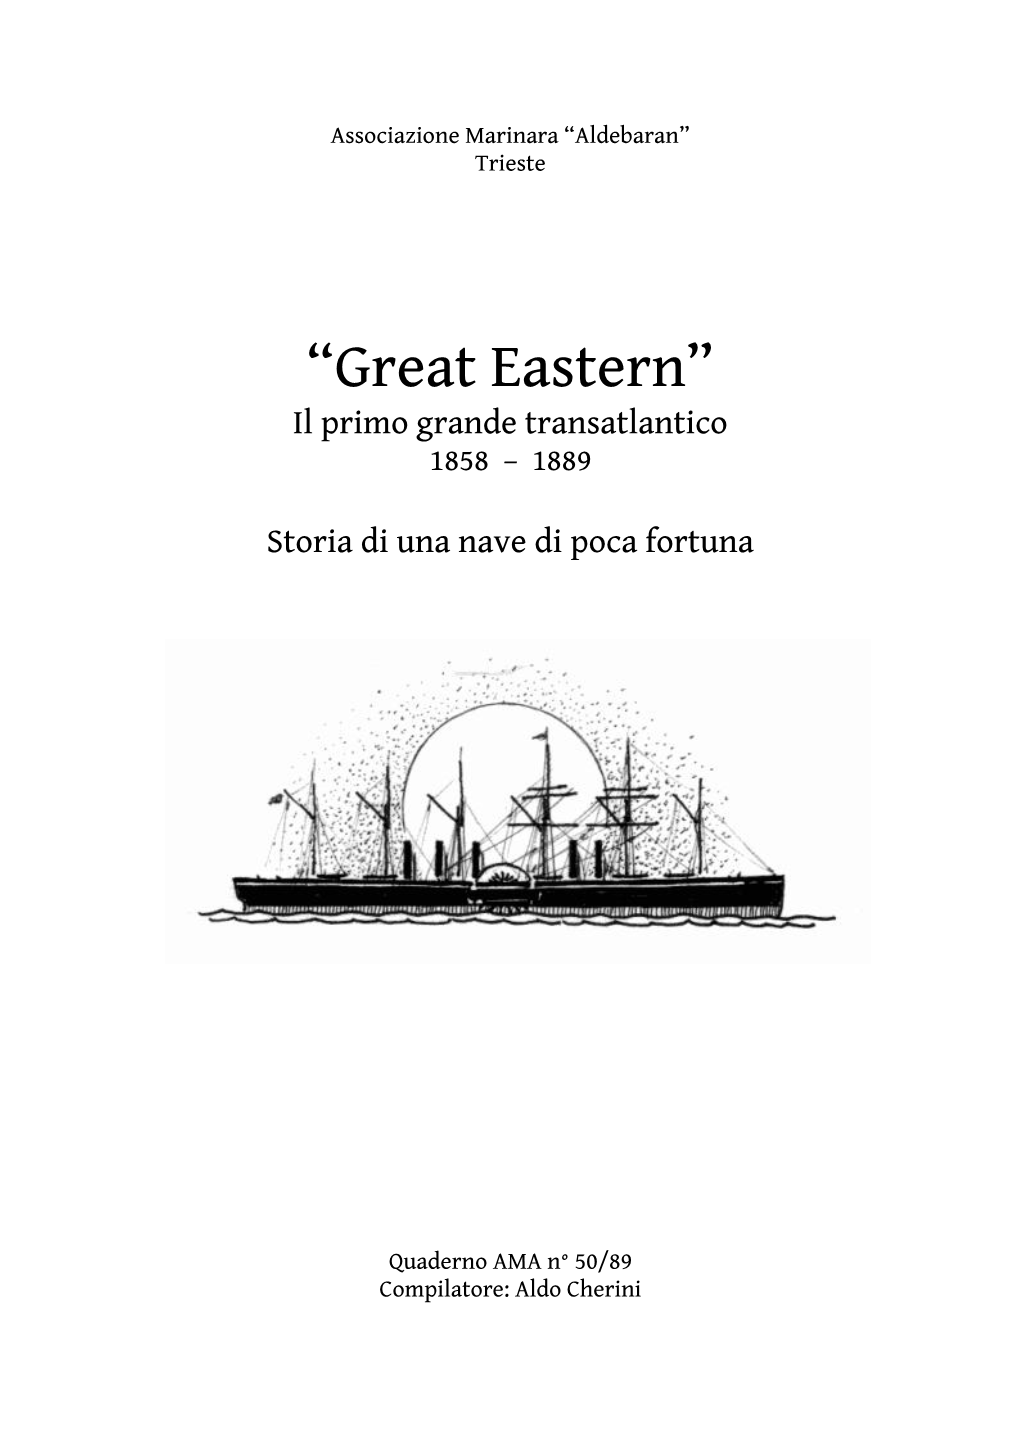 “Great Eastern” Il Primo Grande Transatlantico 1858 – 1889